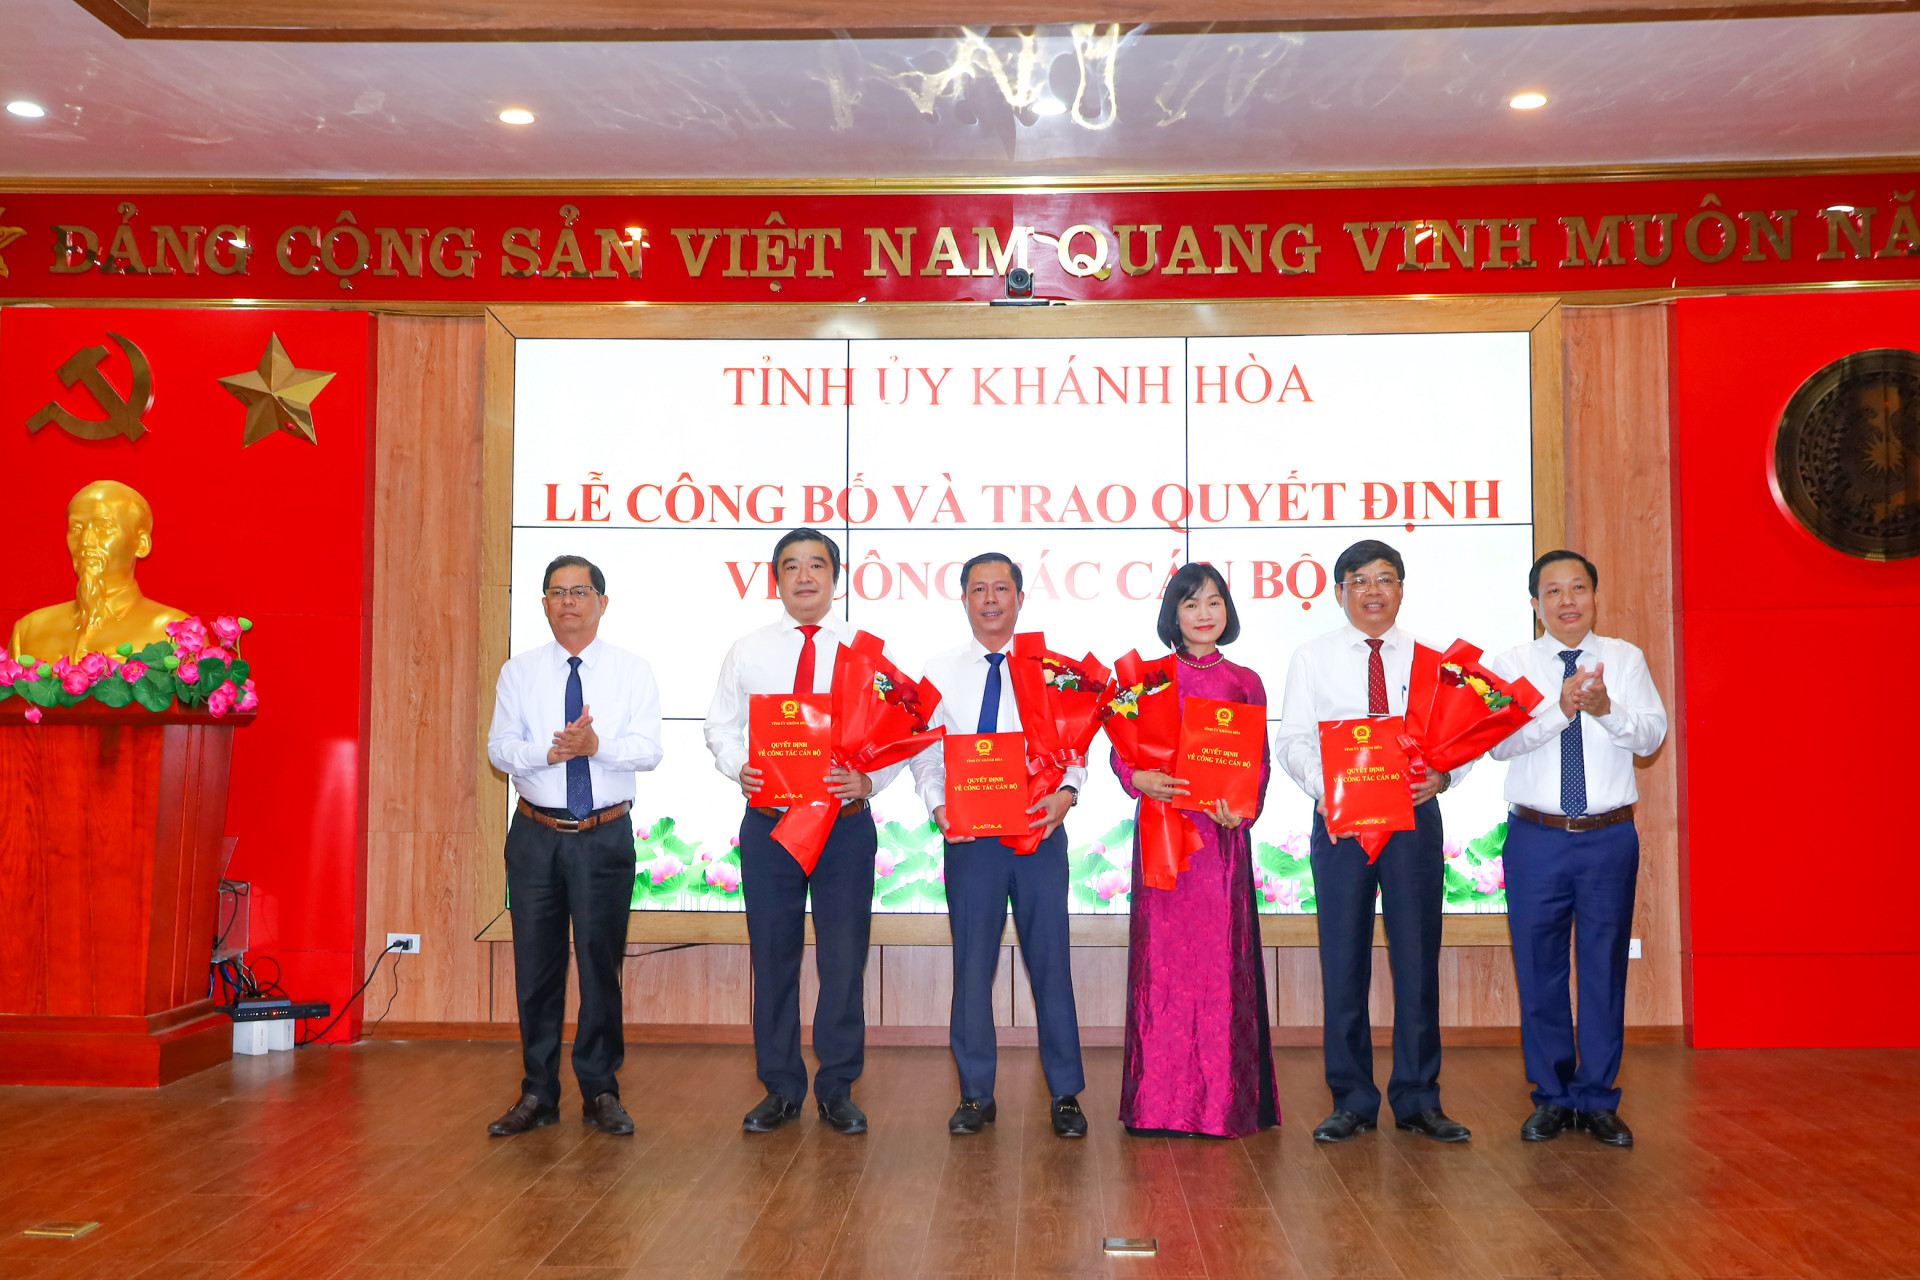 Đồng chí Nguyễn Tấn Tuân và đồng chí Hà Quốc Trị trao quyết định, tặng hoa chúc mừng 4 cán bộ mới được điều động nhận công tác ở các địa phương, đơn vị.